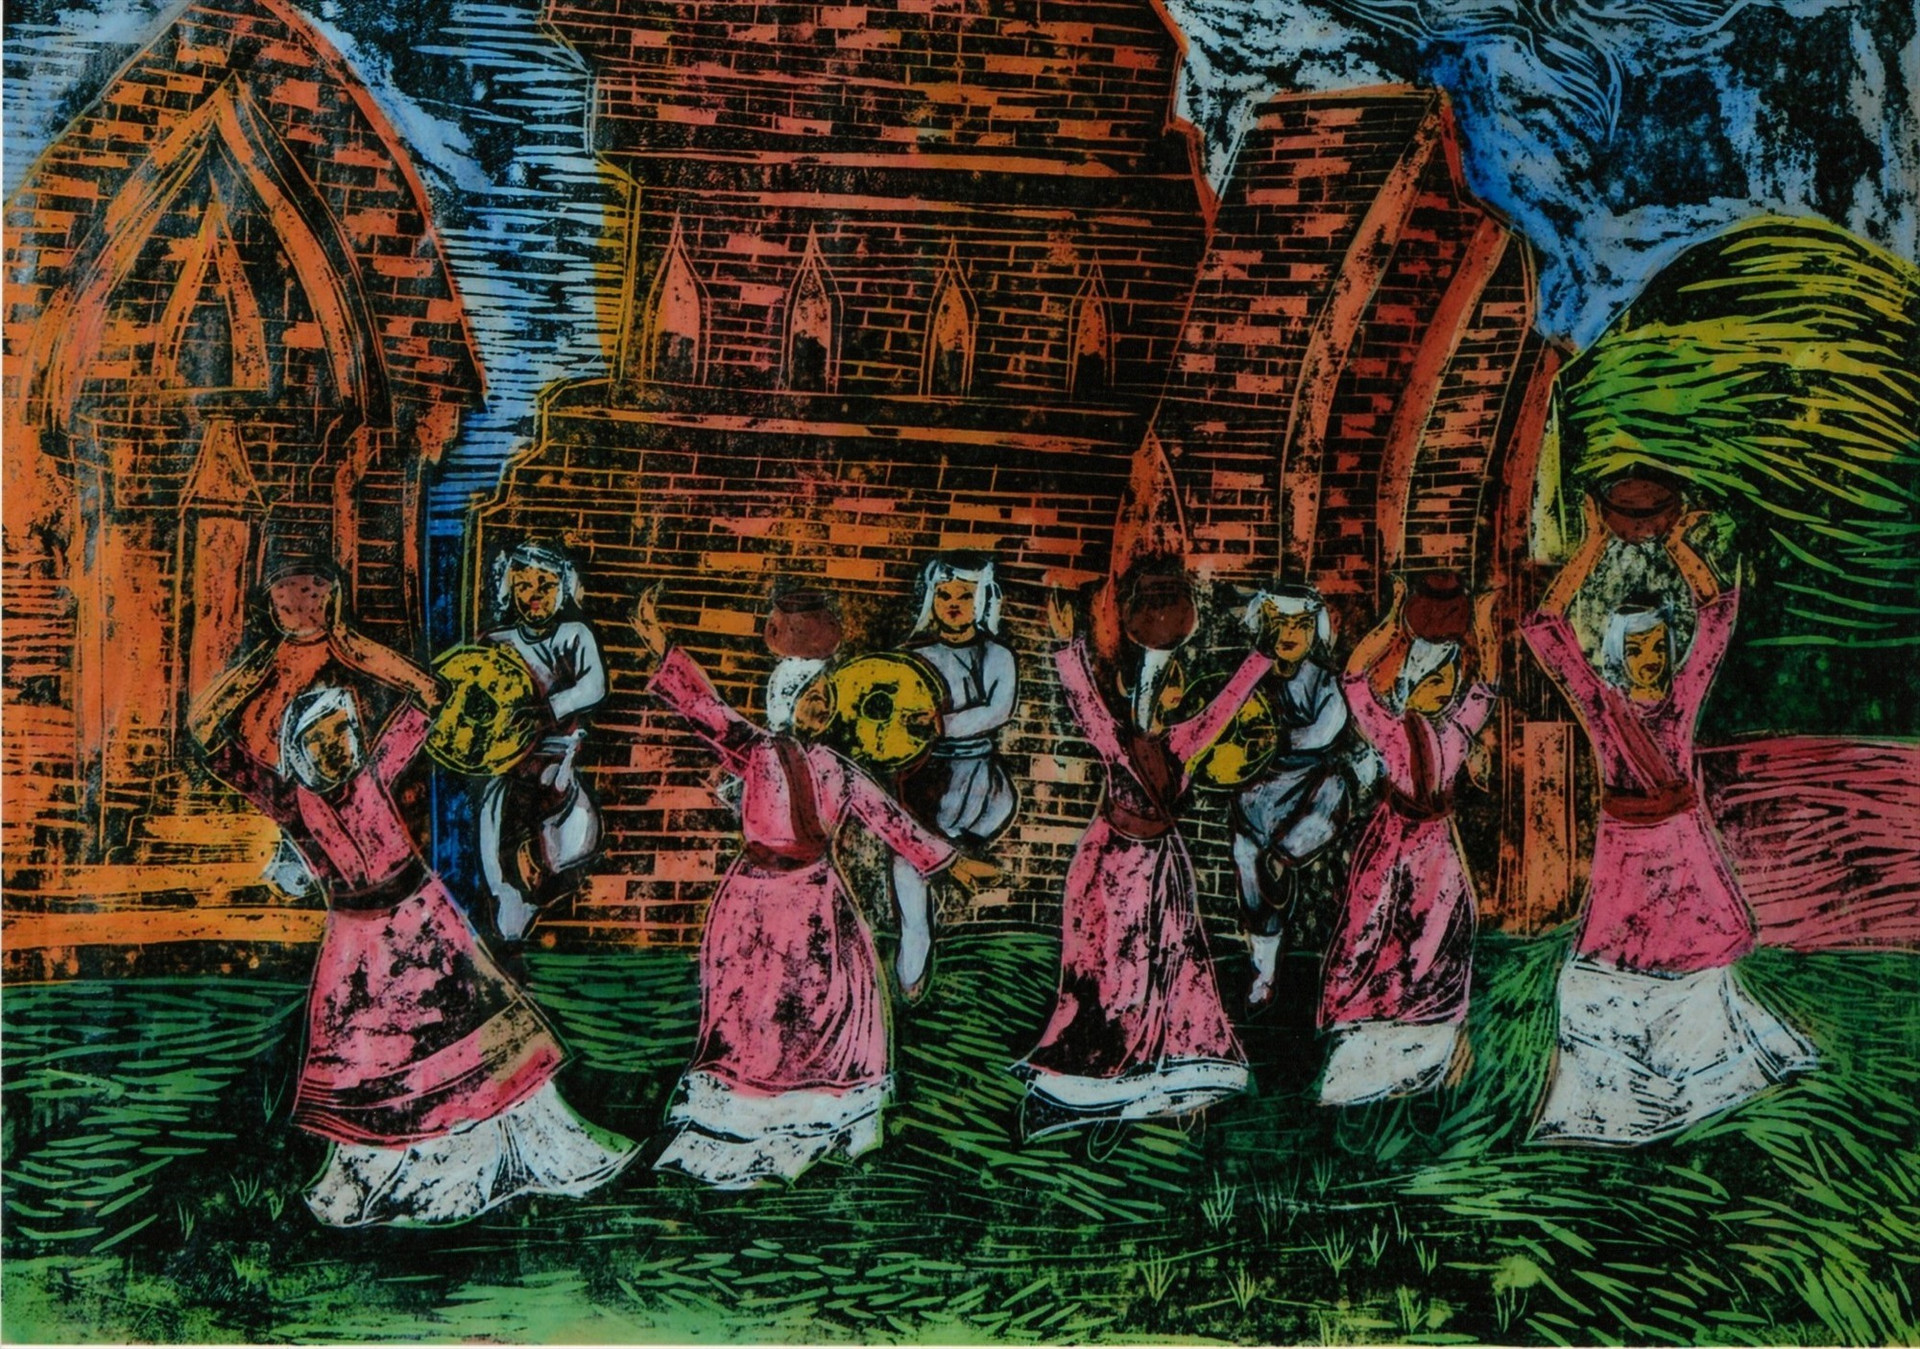 “Nhịp phách bài chòi” (ảnh trên), tranh acrylic của Trần Văn Binh và “Vào hội - 1“, tranh khắc gỗ màu của Ngô Văn Phúc, là hai trong số những tác phẩm của mỹ thuật Quảng Nam được chọn trưng bày tại Triển lãm khu vực năm 2020. Ảnh: VHNT